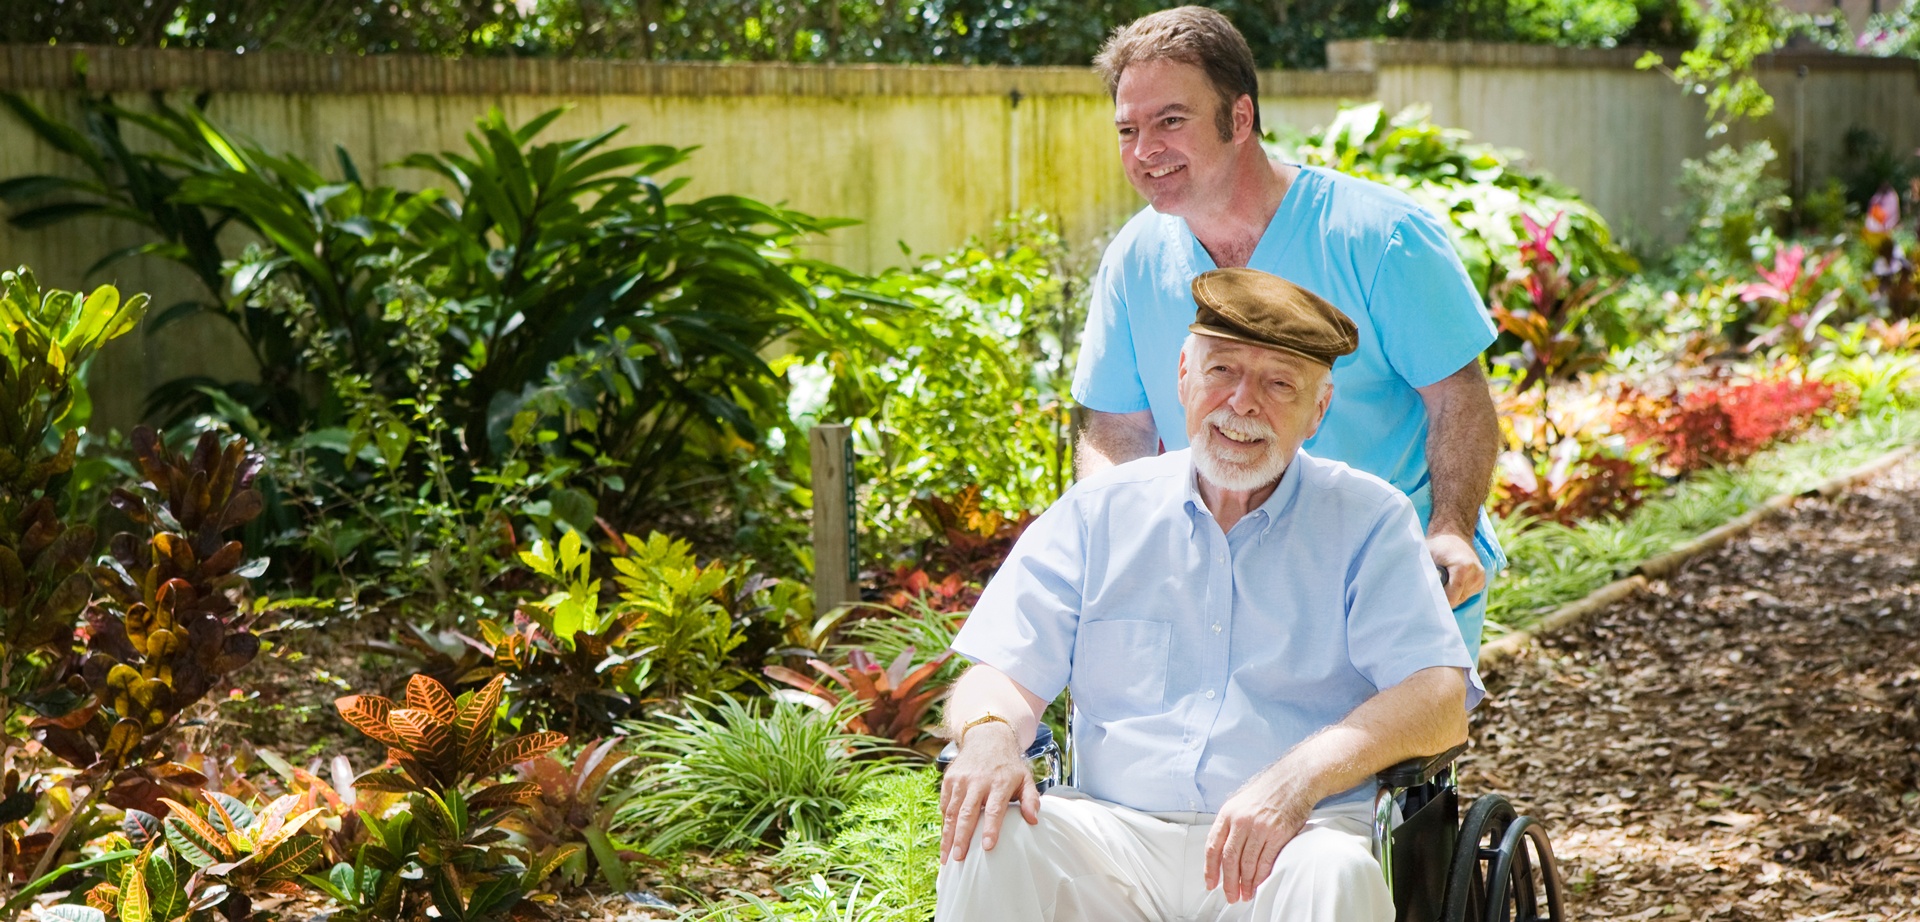 Caregiver with senior in garden